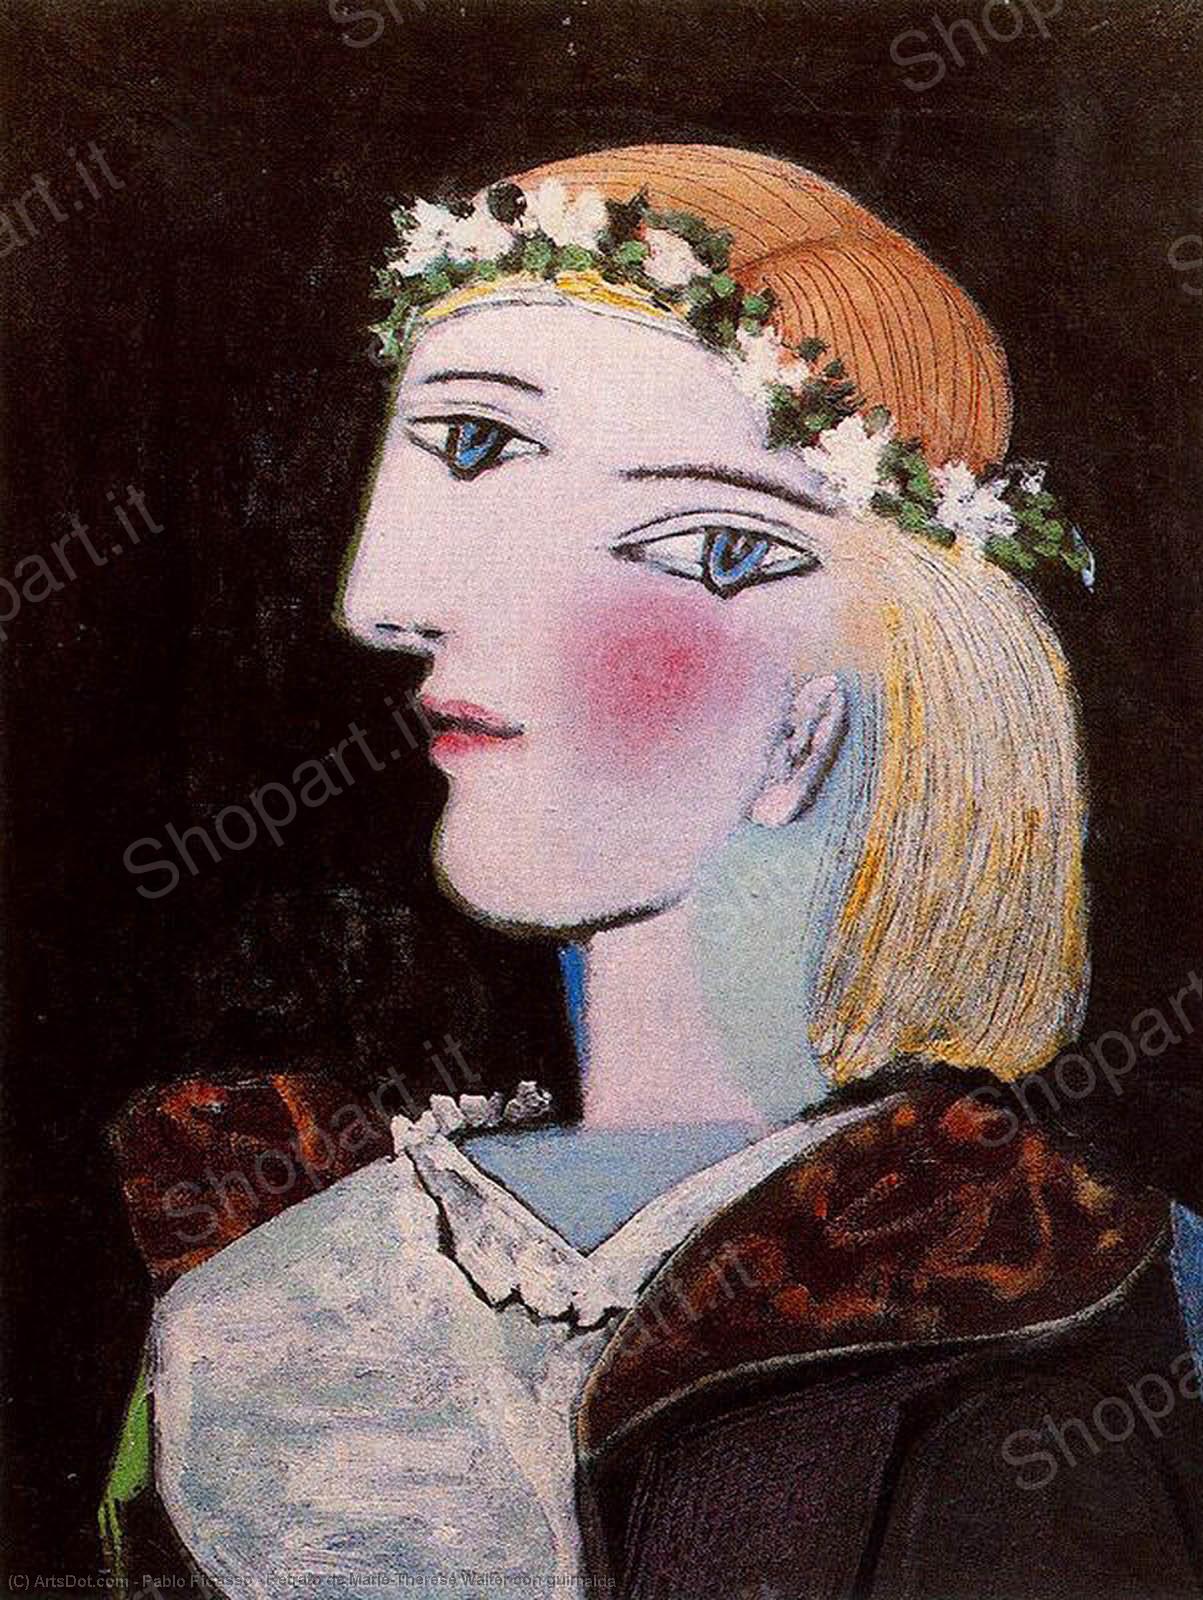 WikiOO.org - Encyclopedia of Fine Arts - Festés, Grafika Pablo Picasso - Retrato de Marie-Thérèse Walter con guirnalda